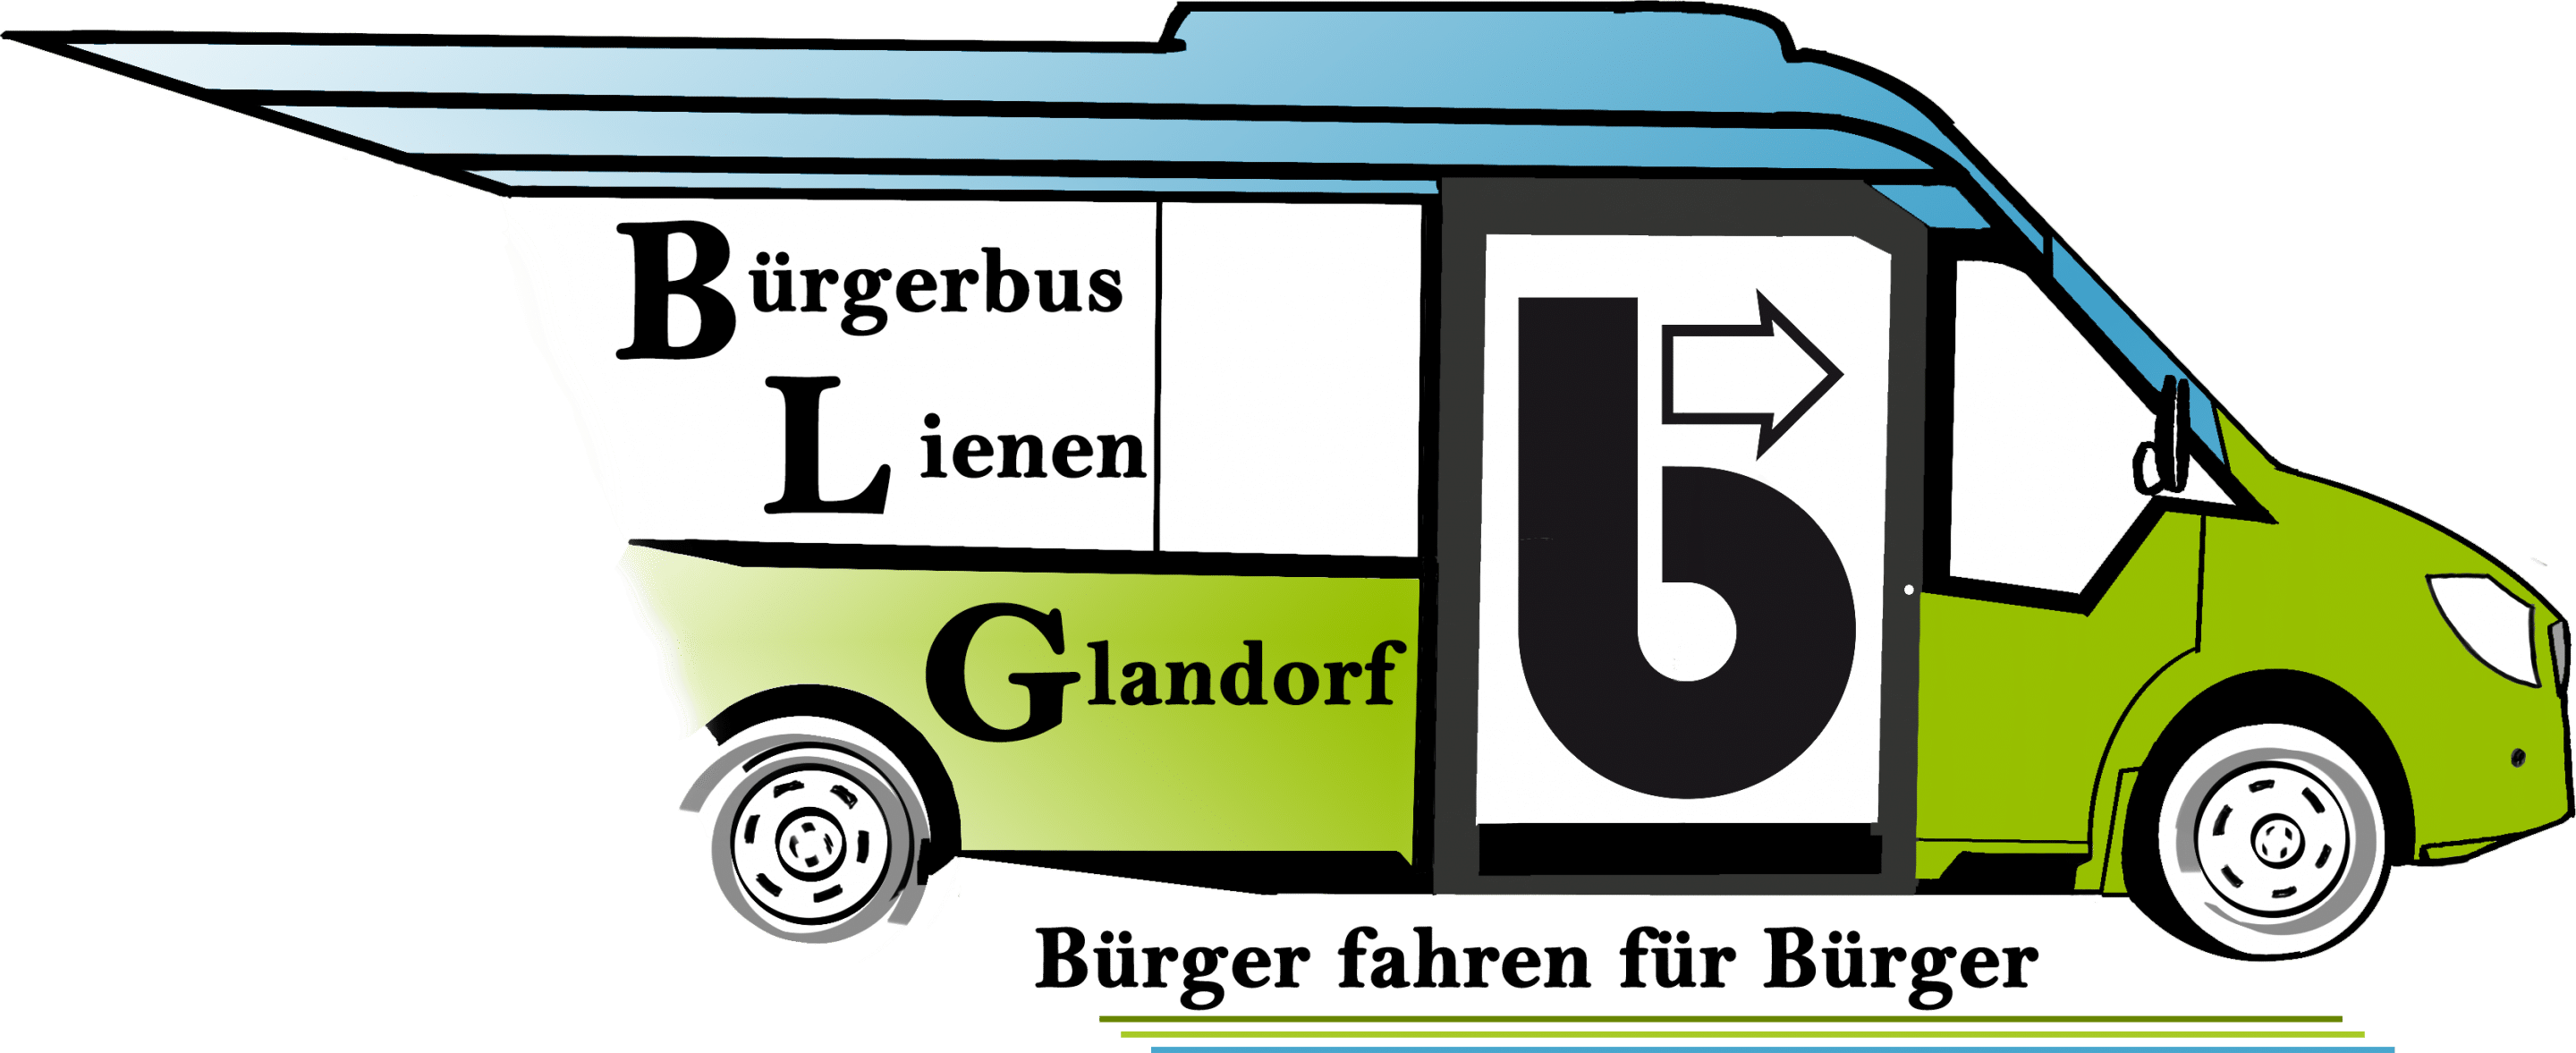 Bürgerbus-Lienen-Glandorf e. V.